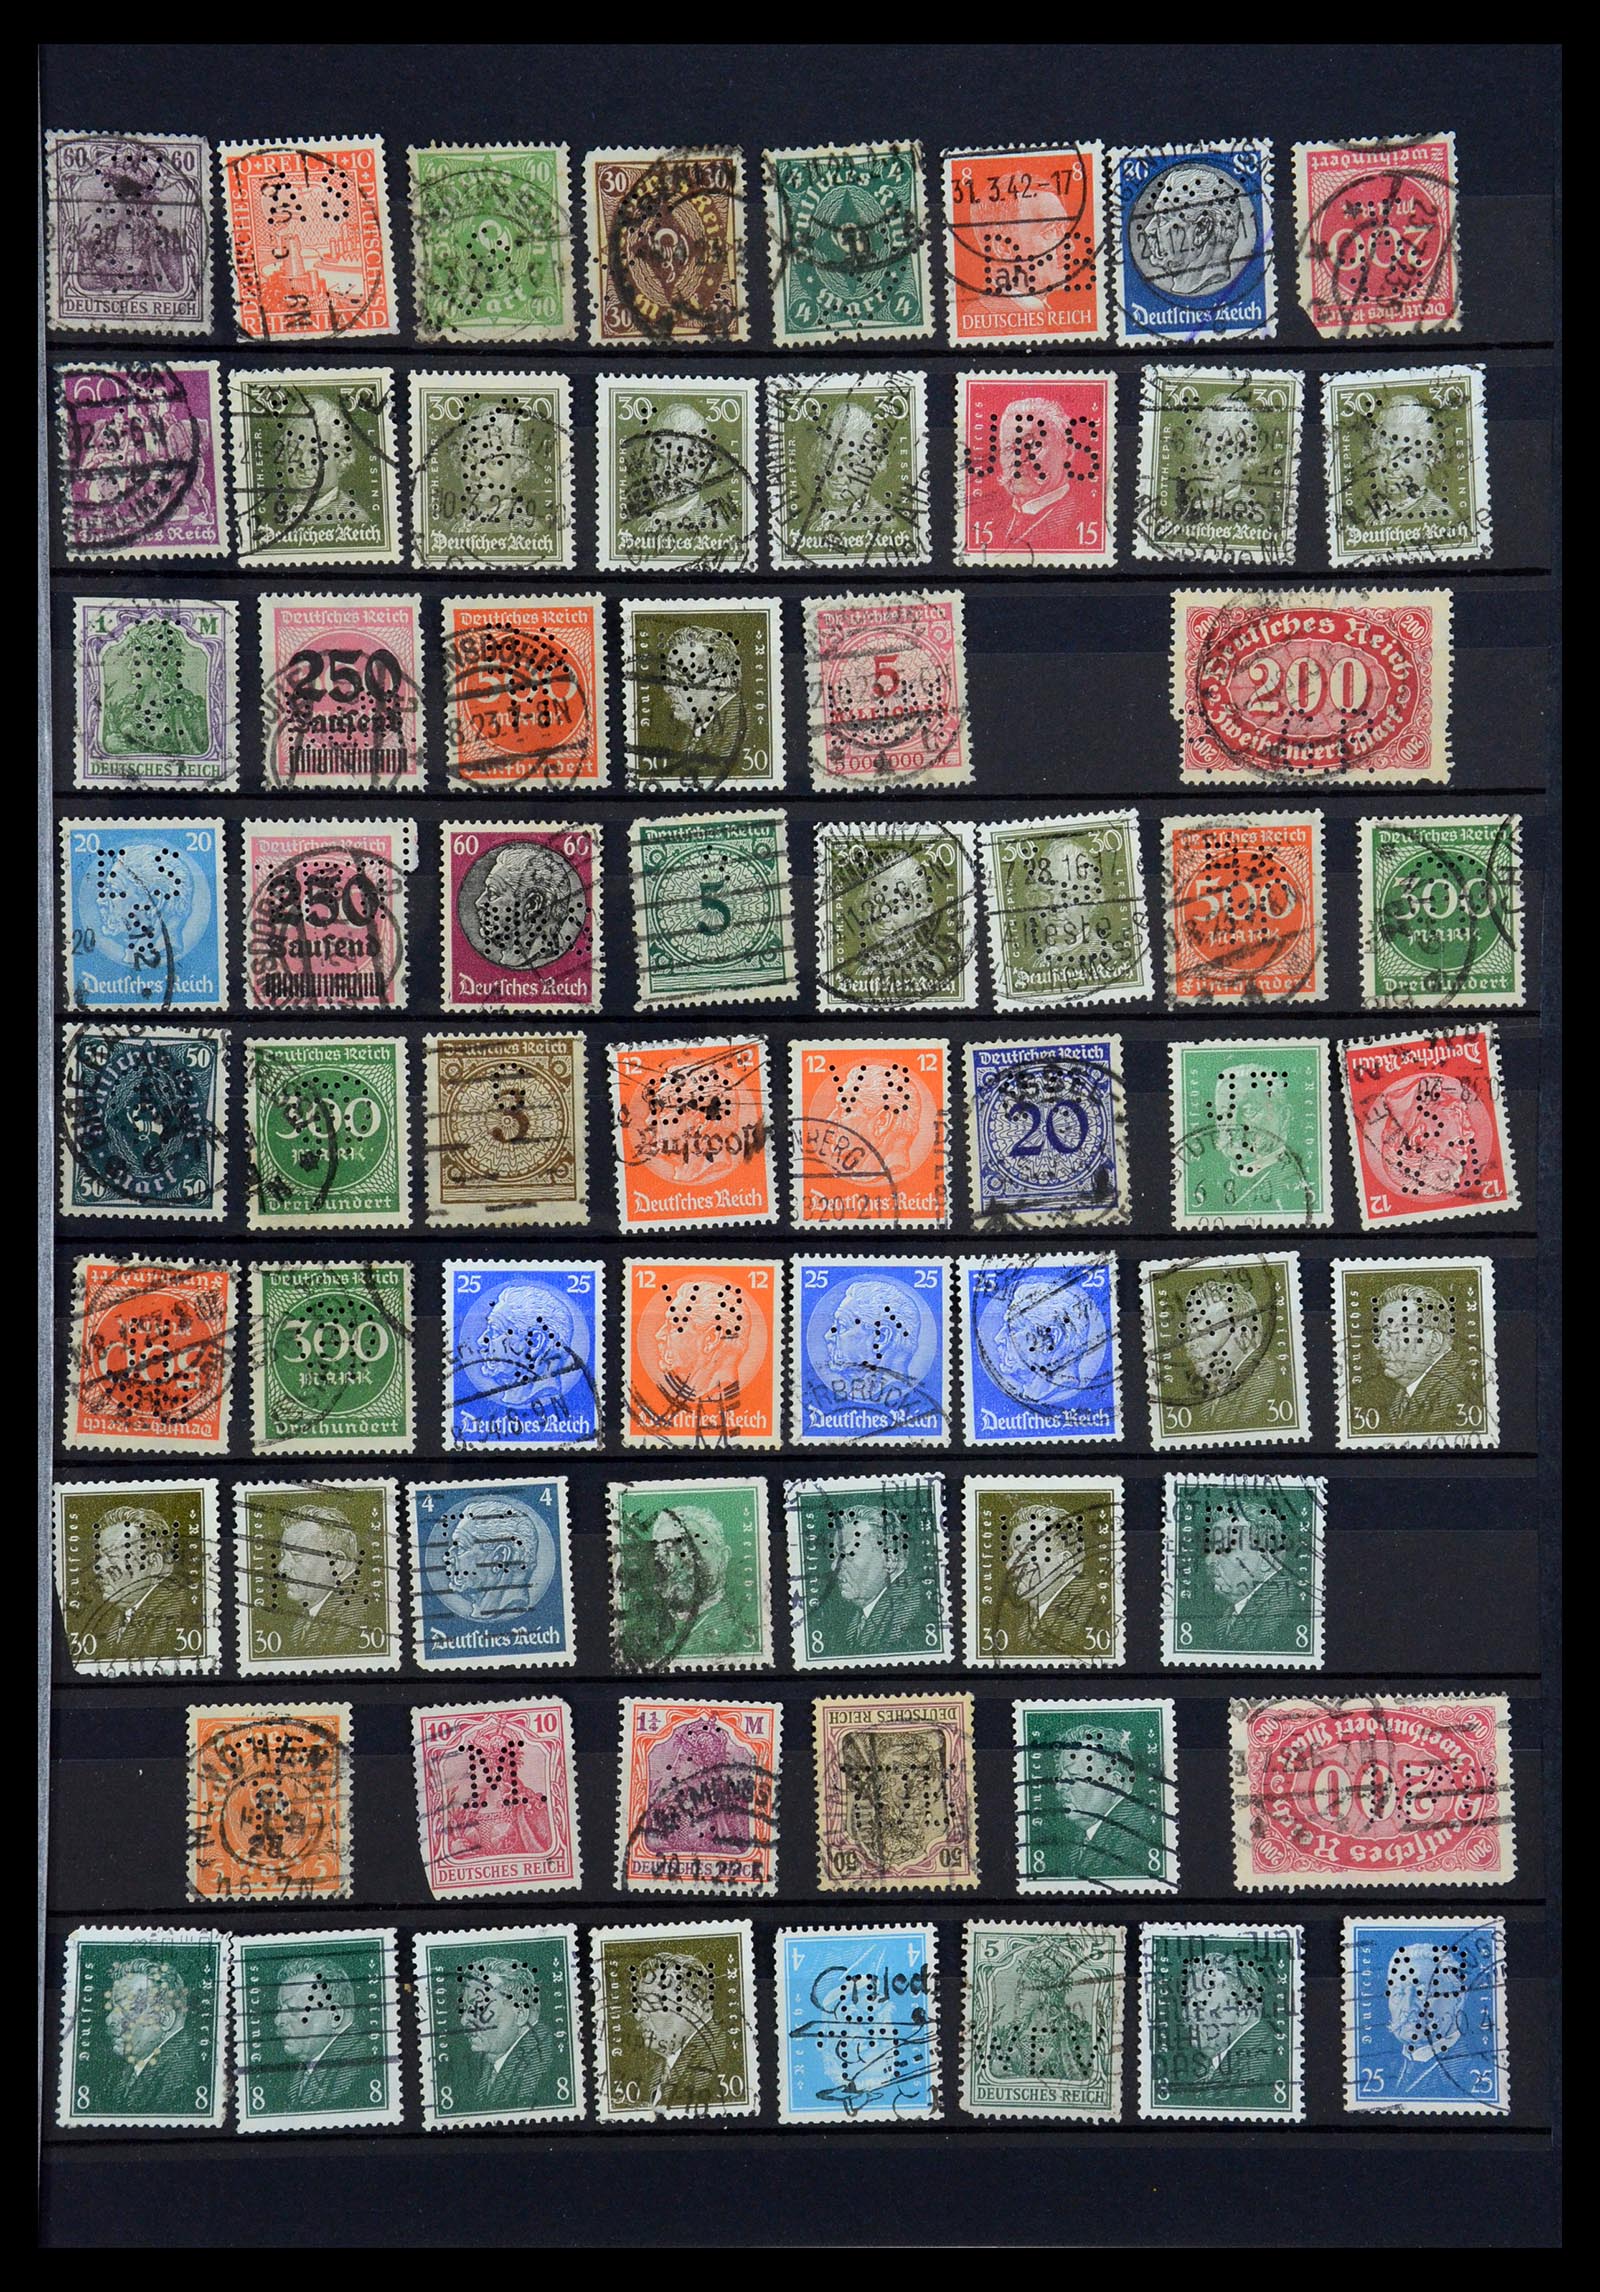 35183 035 - Stamp Collection 35183 German Reich perfins 1880-1945.